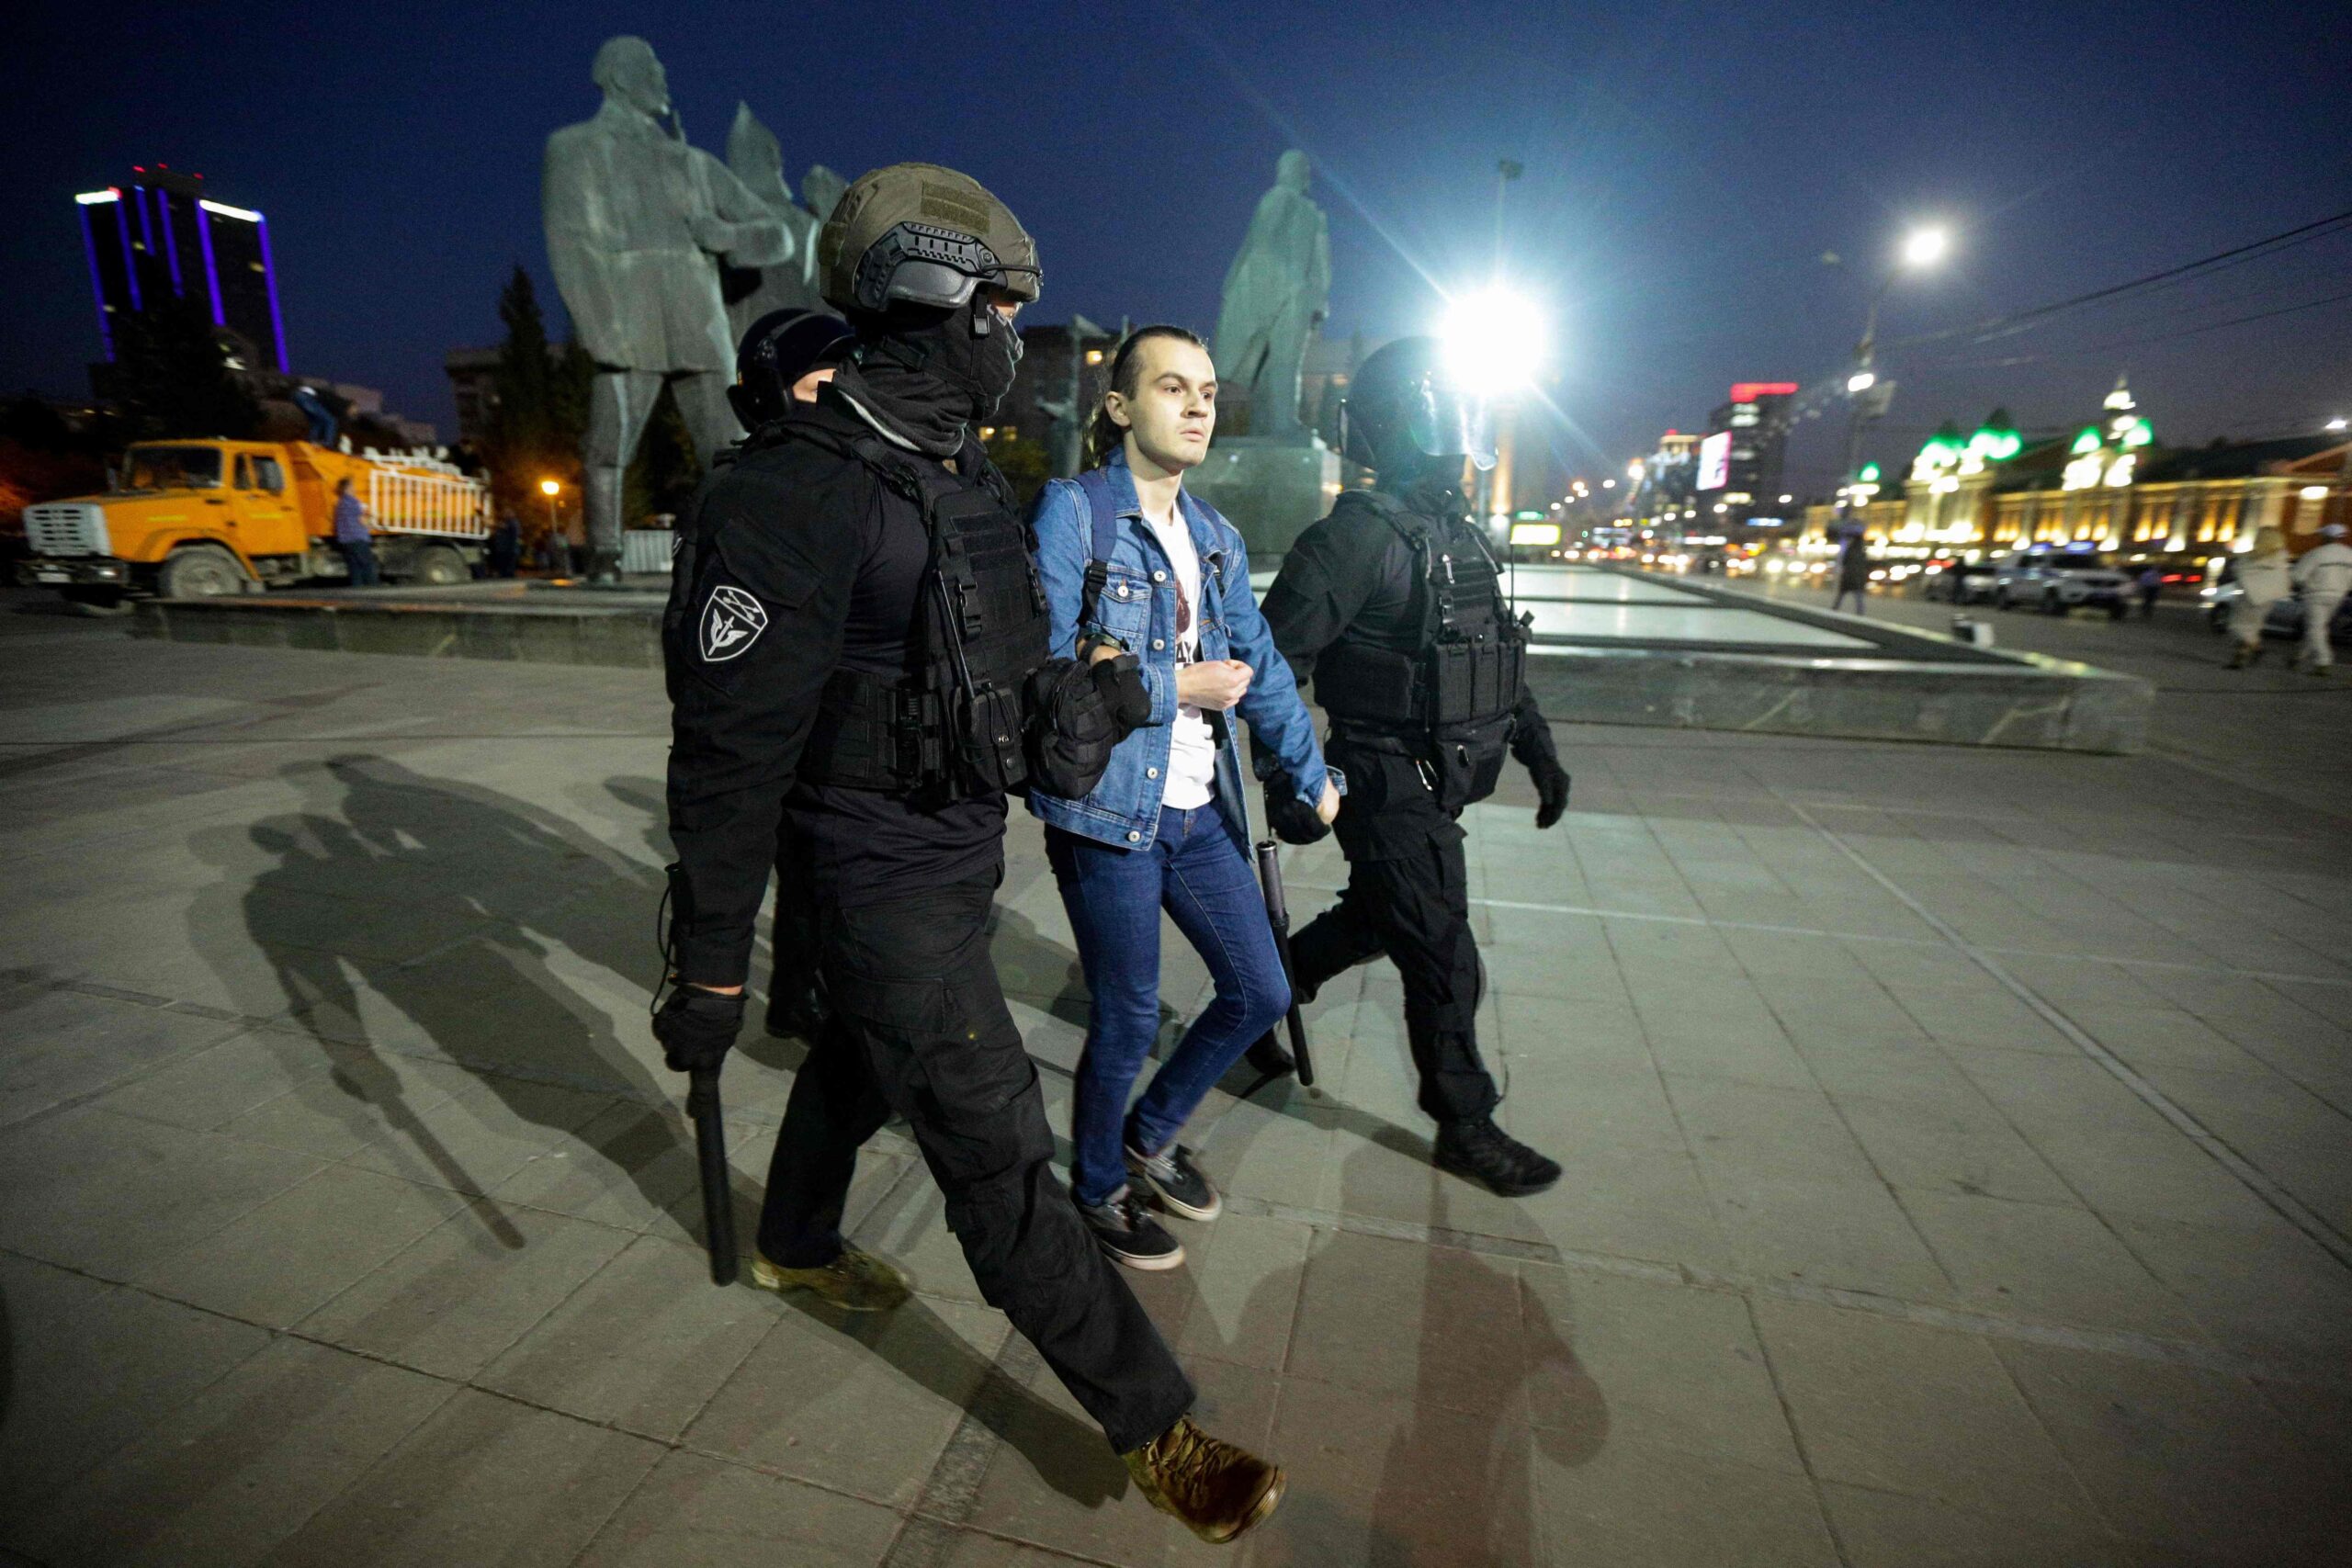 Задержание на акции против мобилизации, Новосибирск. 21 сентября 2022 года. Фото Rostislav NETISOV/AFP/Scanpix/LETA